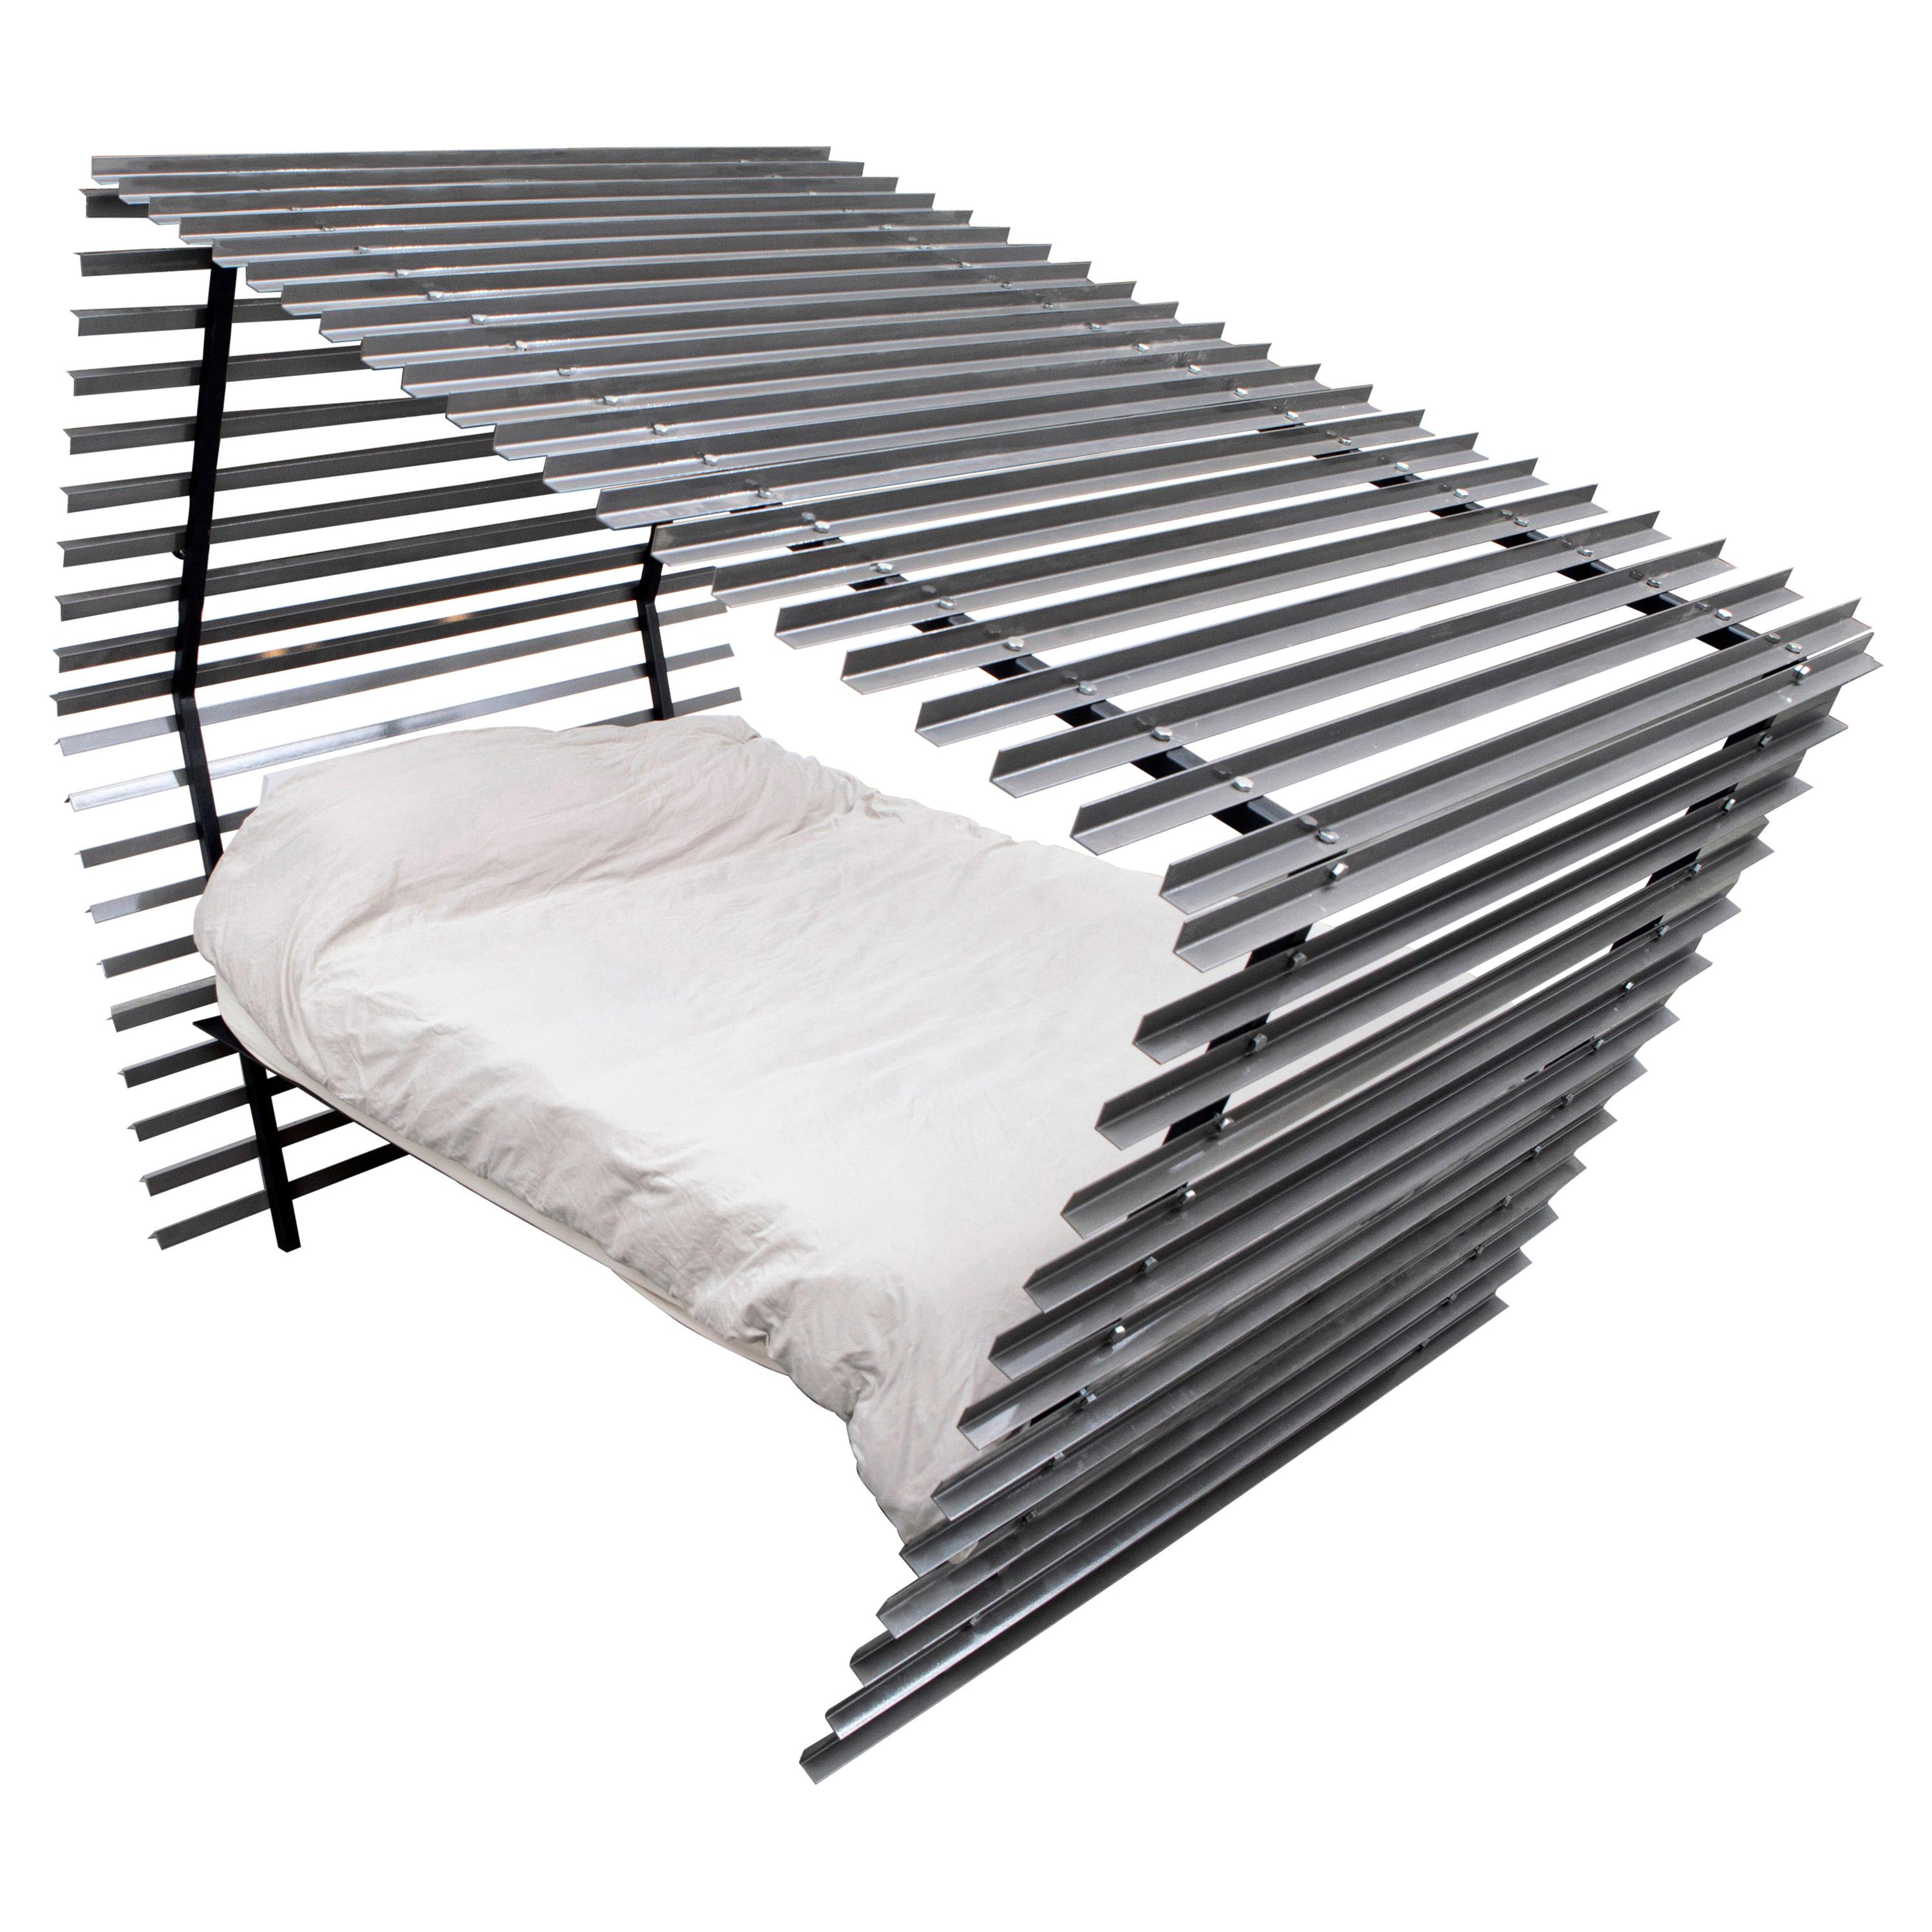 Modern Canopy Bed - Queen - Modernist Bed - Modern Bed Room - Floating Bed Frame